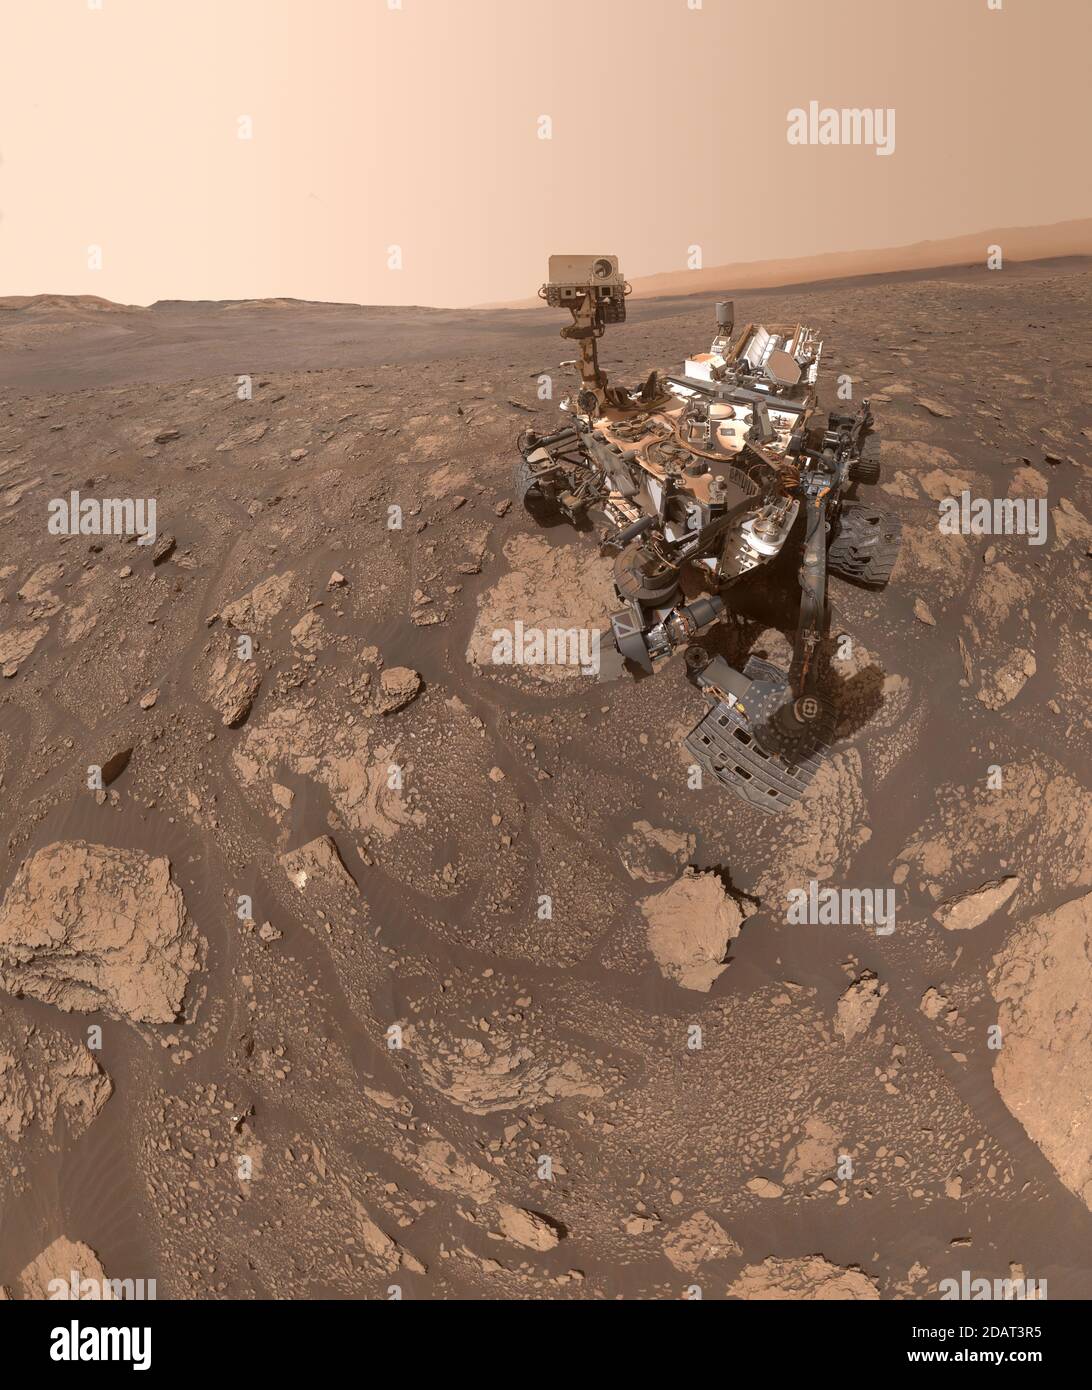 MARTE - 12 de noviembre de 2020 - un autorretrato de la NASA Curiosity Mars rover tomó este selfie en un lugar Apodado 'Mary Anning' después de un centur 19 Foto de stock